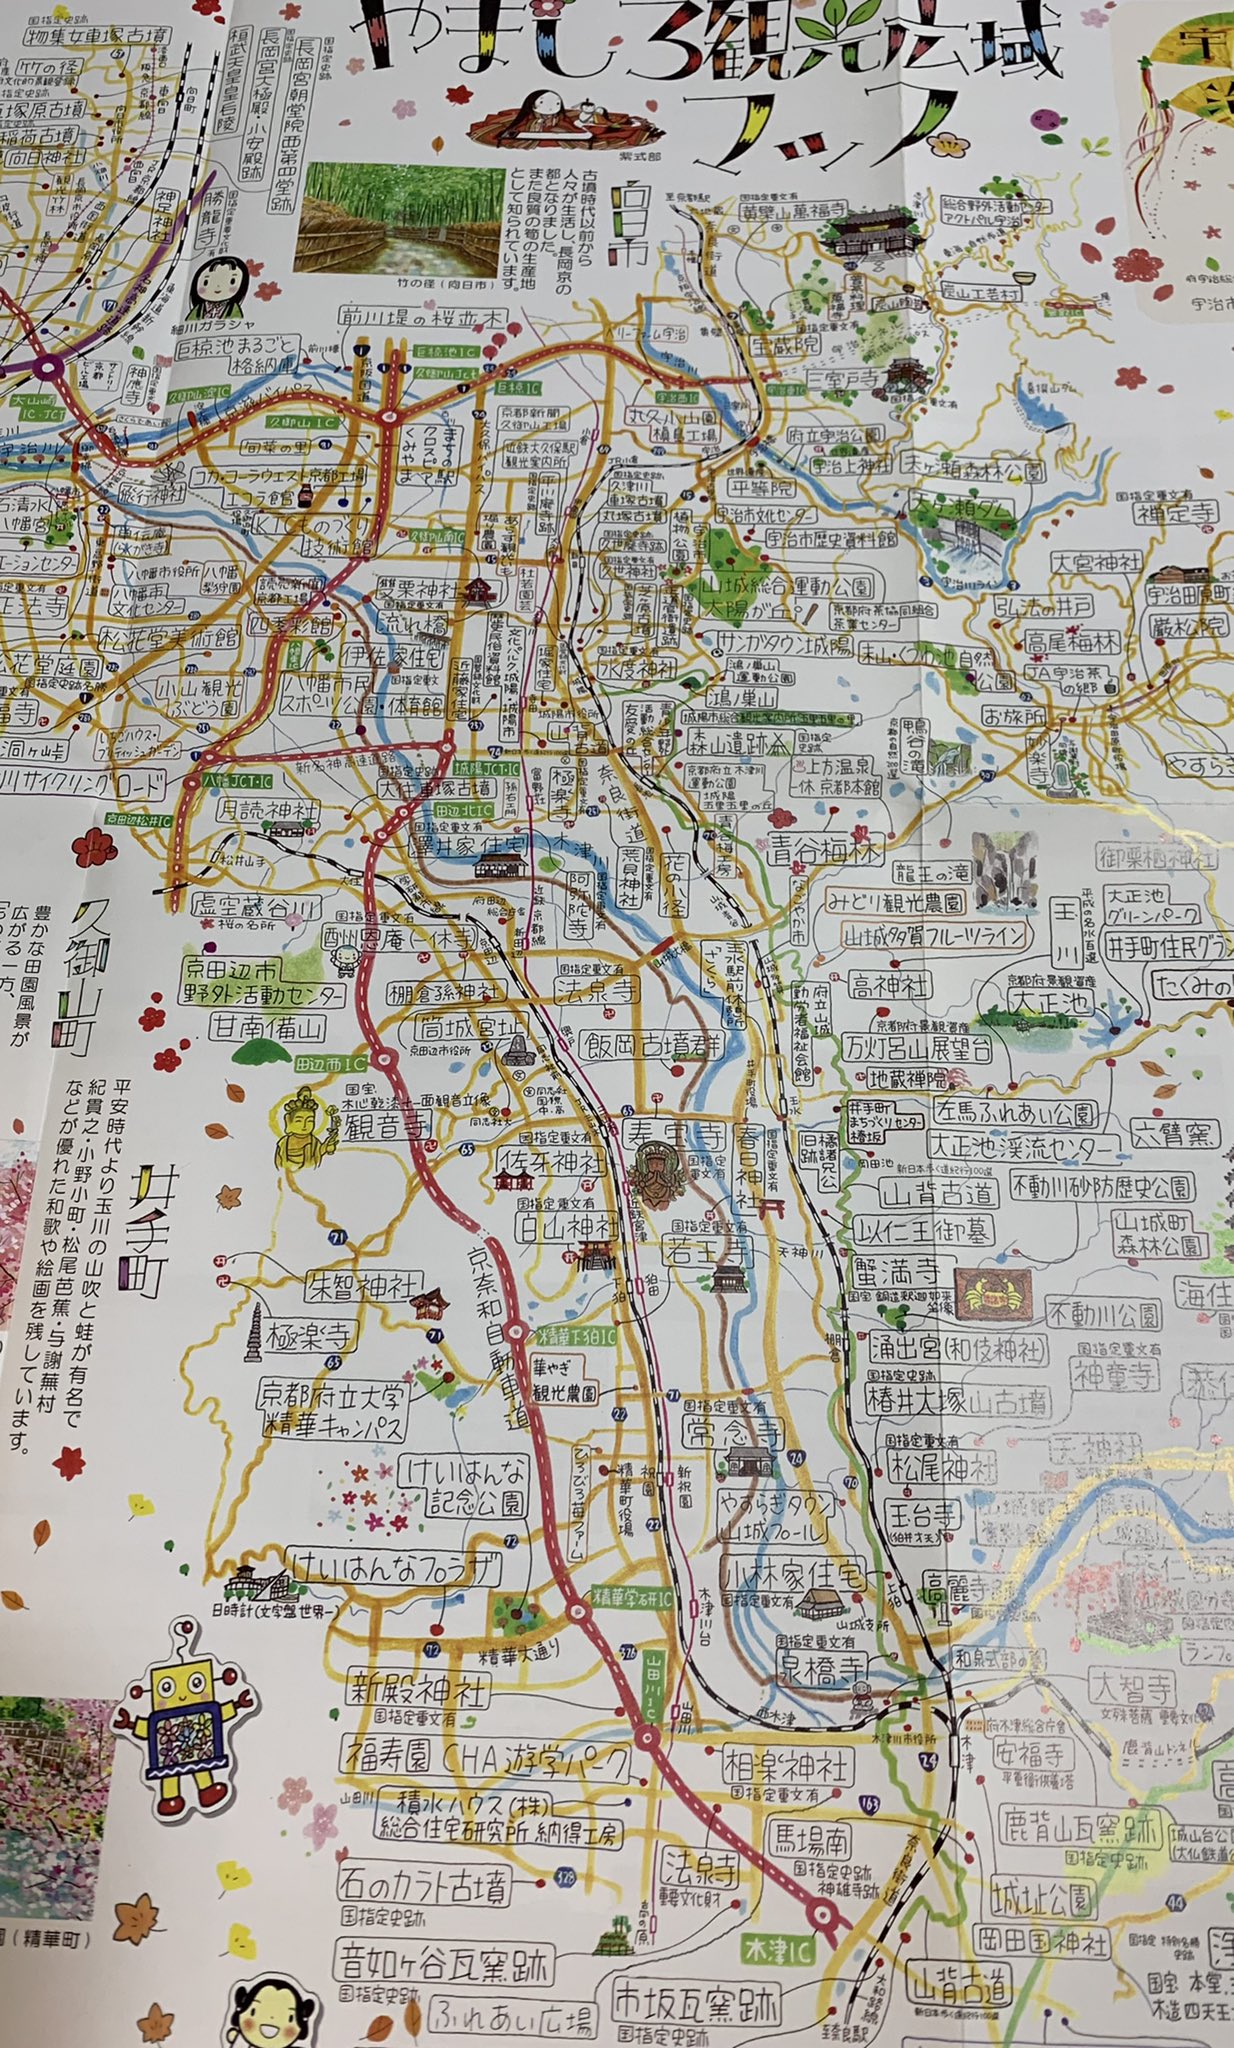 ながたみどり イラストマップで旅する京都 今日の 鎌倉殿の13人 に登場した以仁王ゆかりの地 やましろ観光広域マップに描かせていただいていました 京都 イラストレーター 以仁王 鎌倉殿の13人 イラストマップ 地図 イラスト やましろ観光